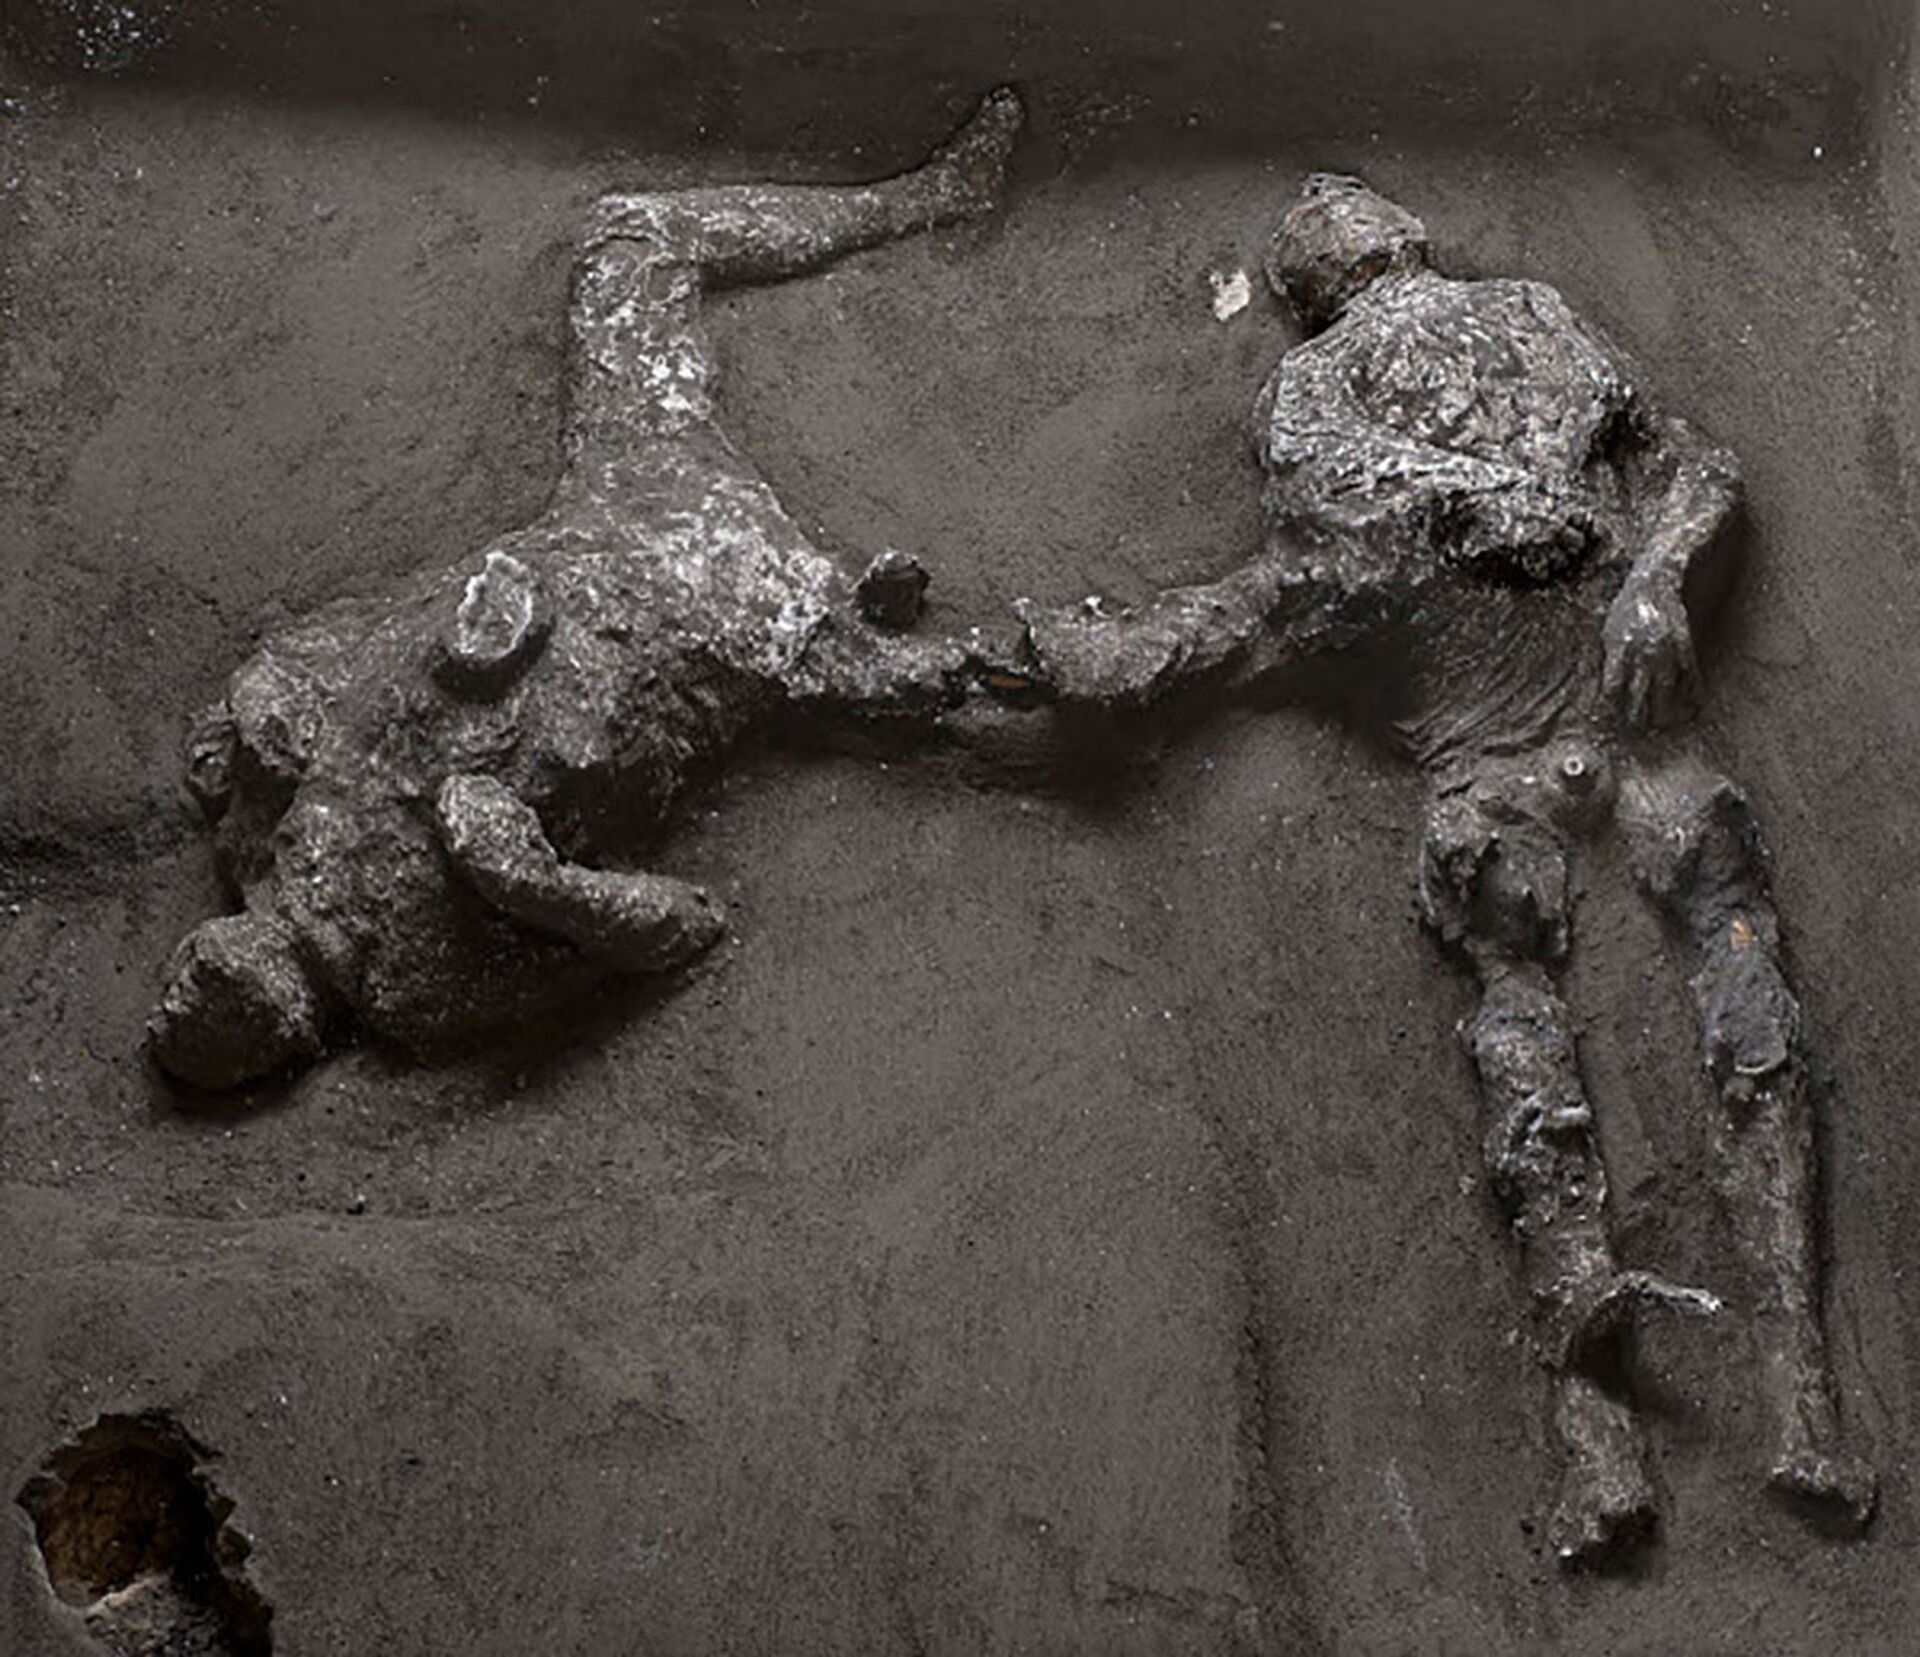 Habitantes de Pompeia teriam sido mortos em 15 minutos por avalanche de cinzas e gás, não por lava - Sputnik Brasil, 1920, 23.03.2021